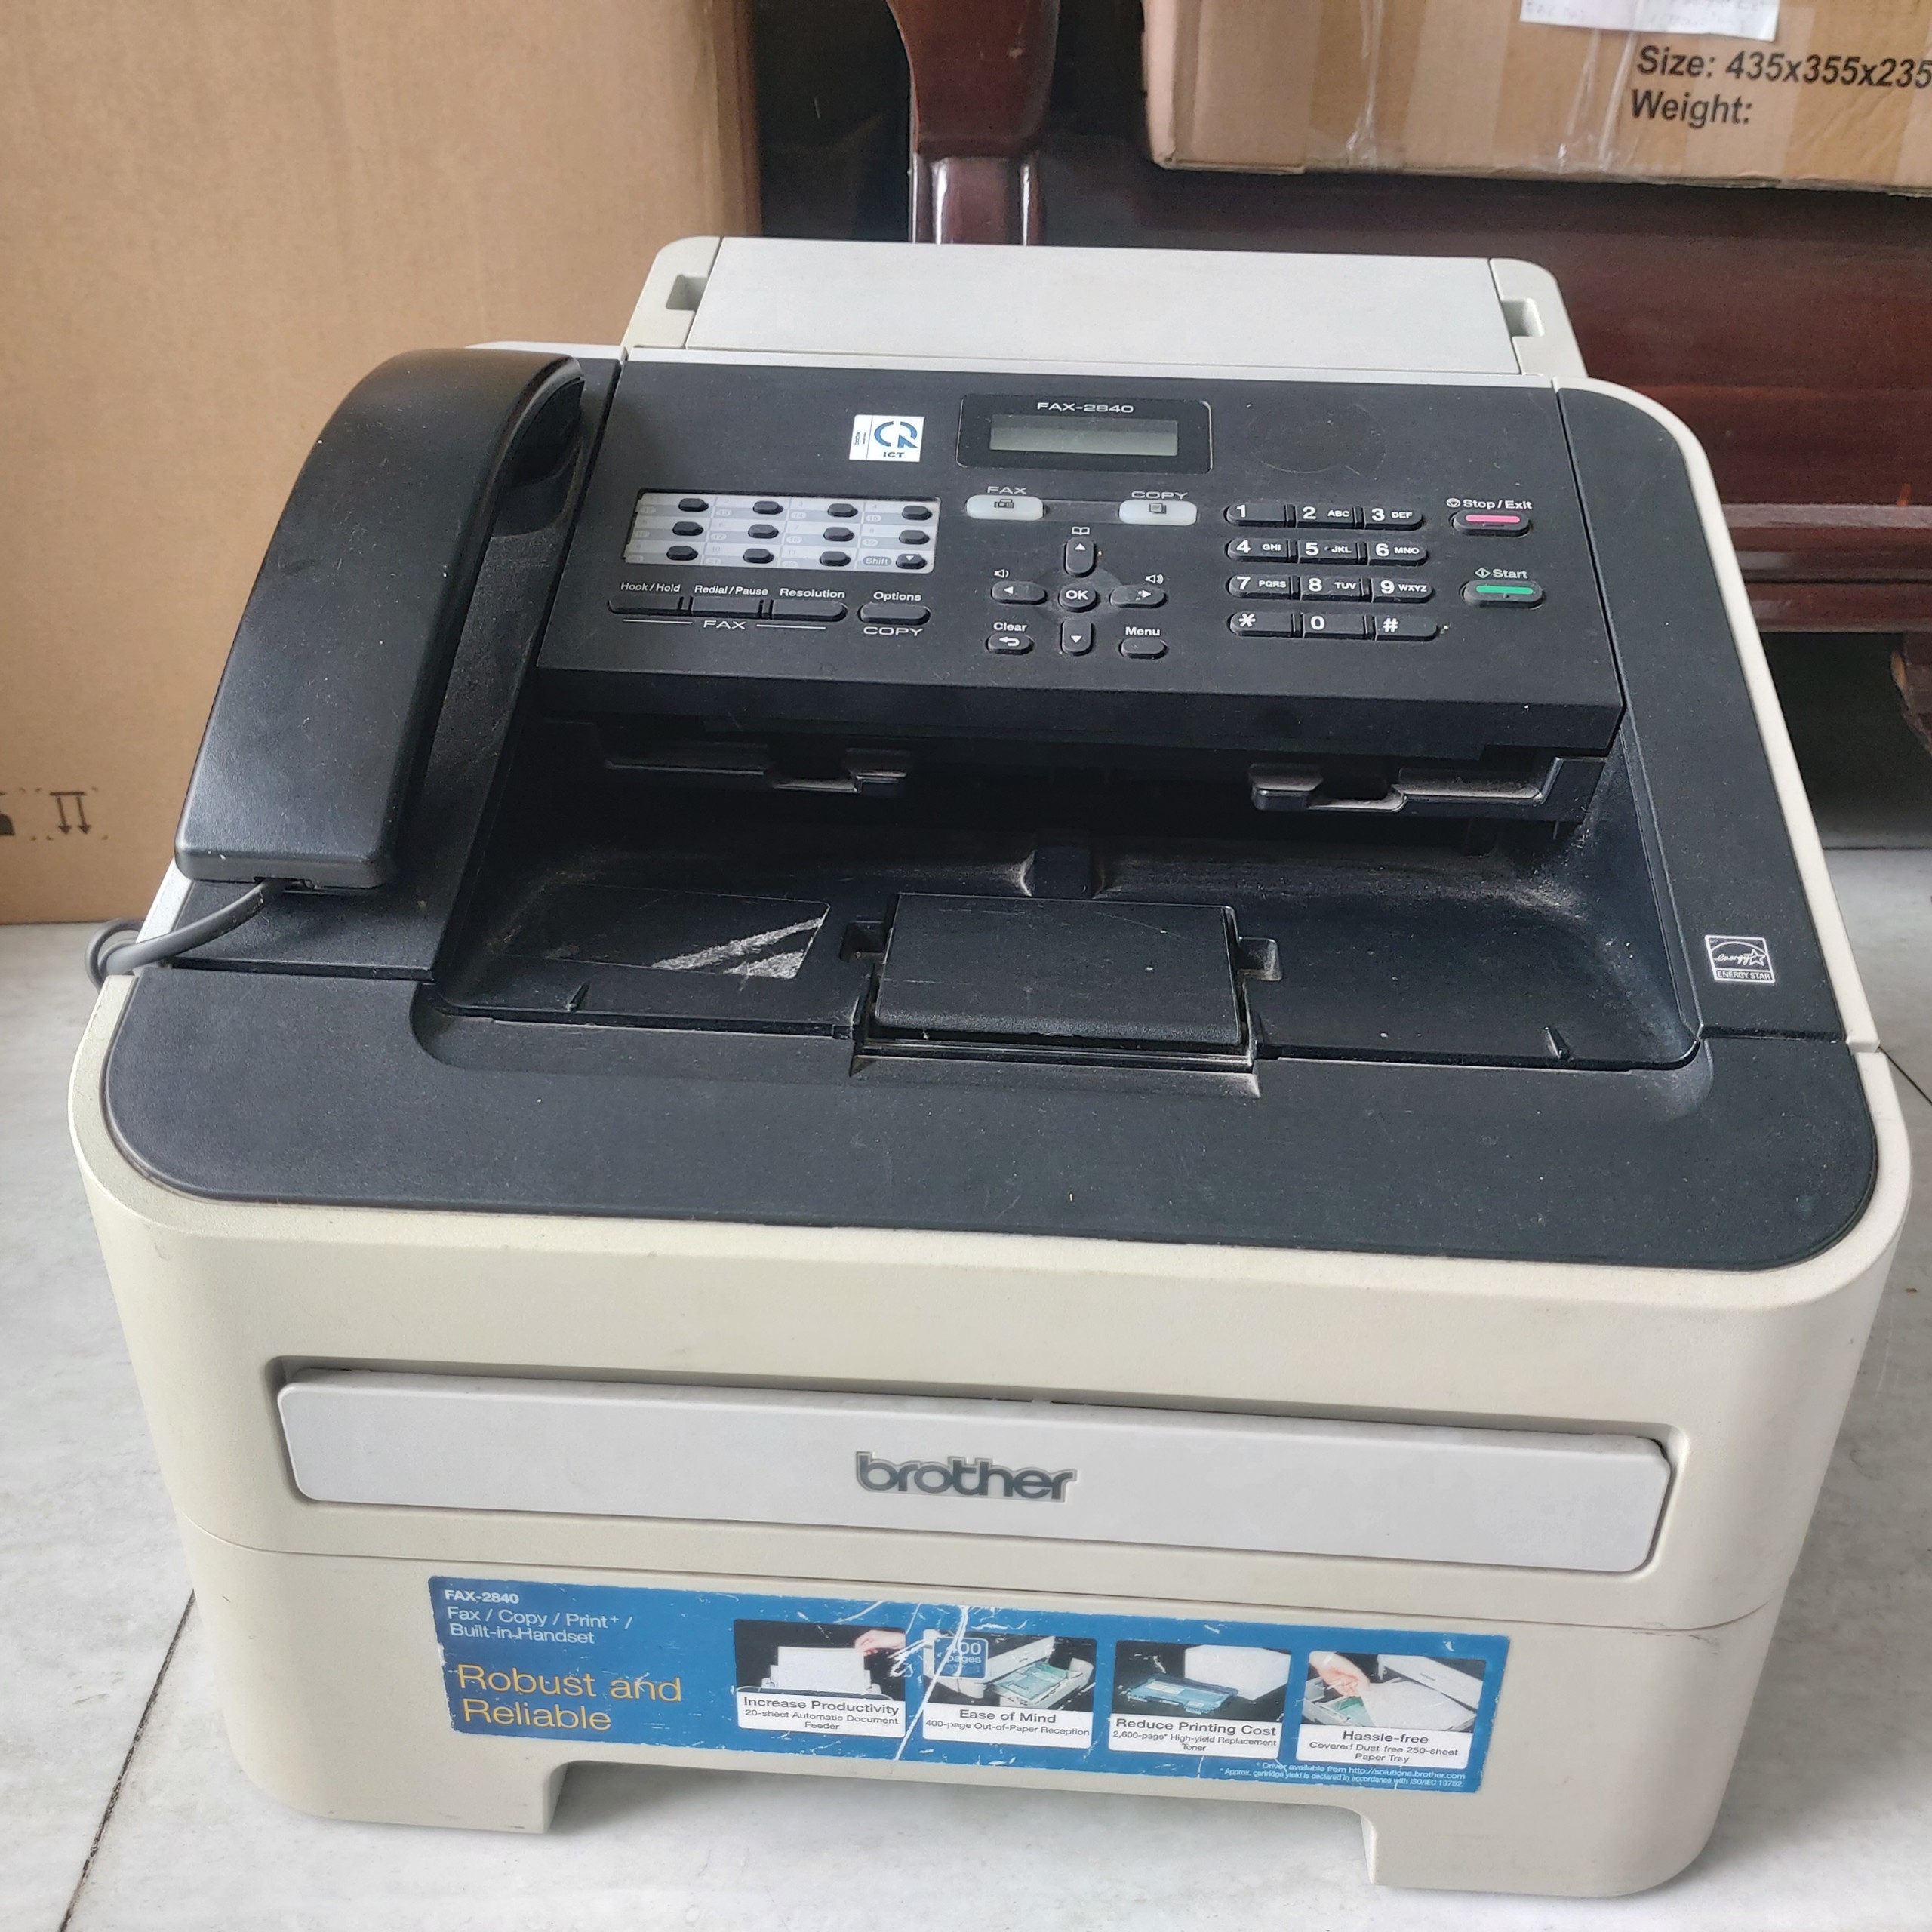 Máy in Brother fax-2840 chính hãng đầy đủ phụ kiện bảo hành 1 tháng